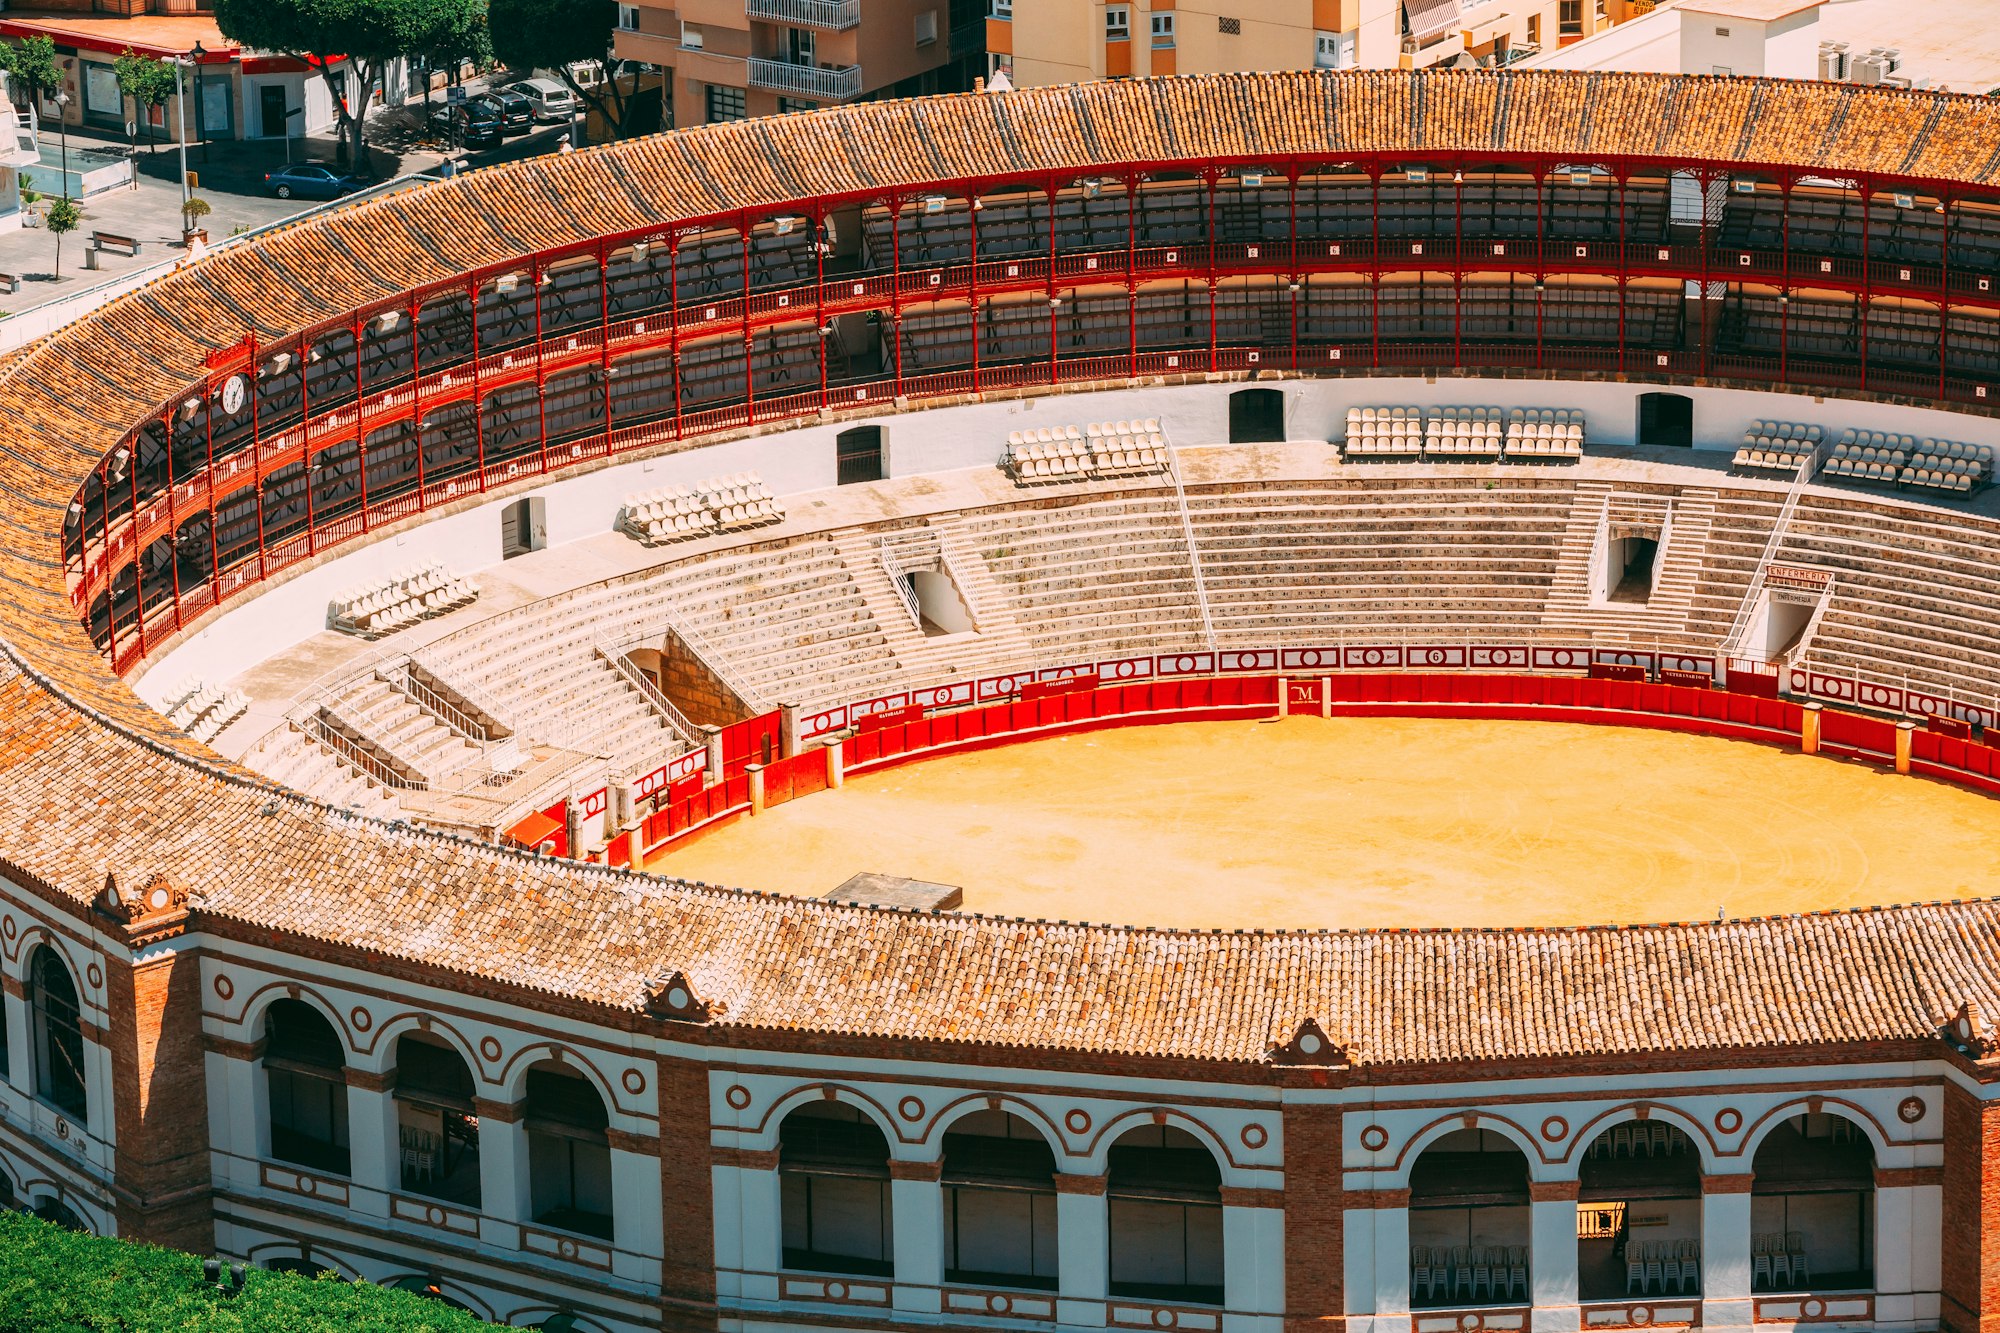 Malaga, Spain. Plaza de Toros de Ronda - bullring. La Malagueta is the bullring. Close Up